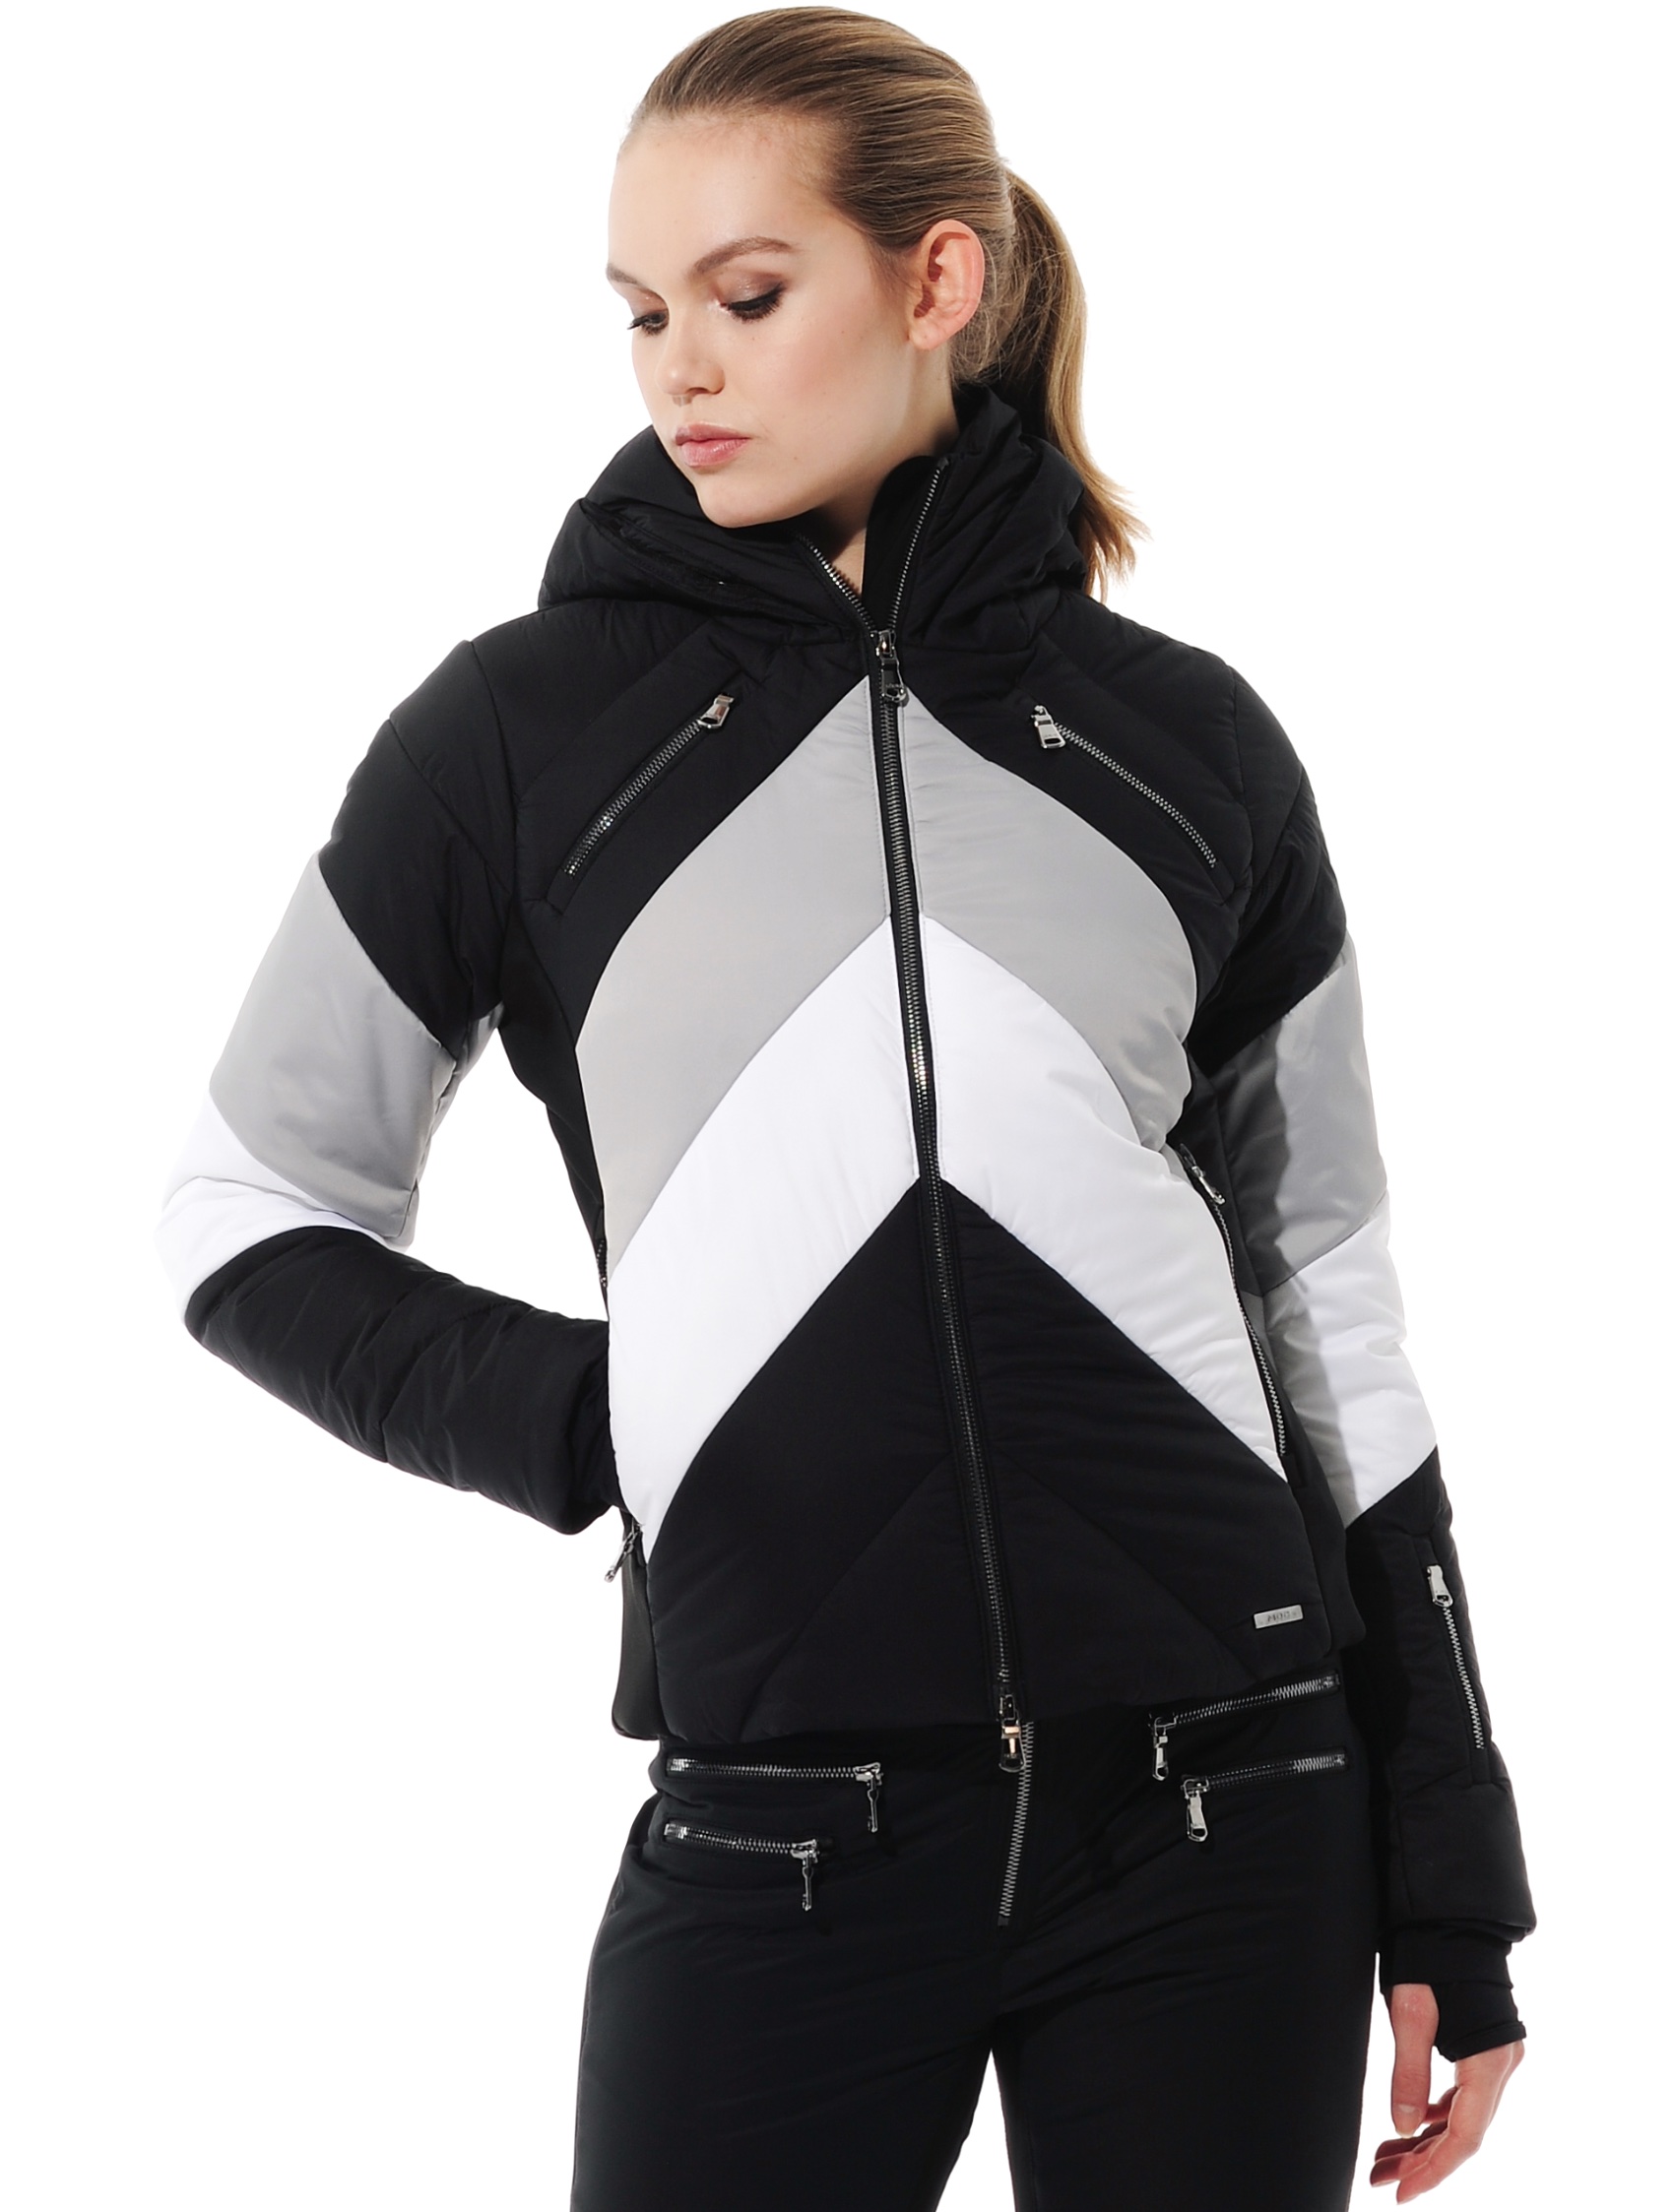 stretch ski jacket with 4way stretch side panels black/grey 